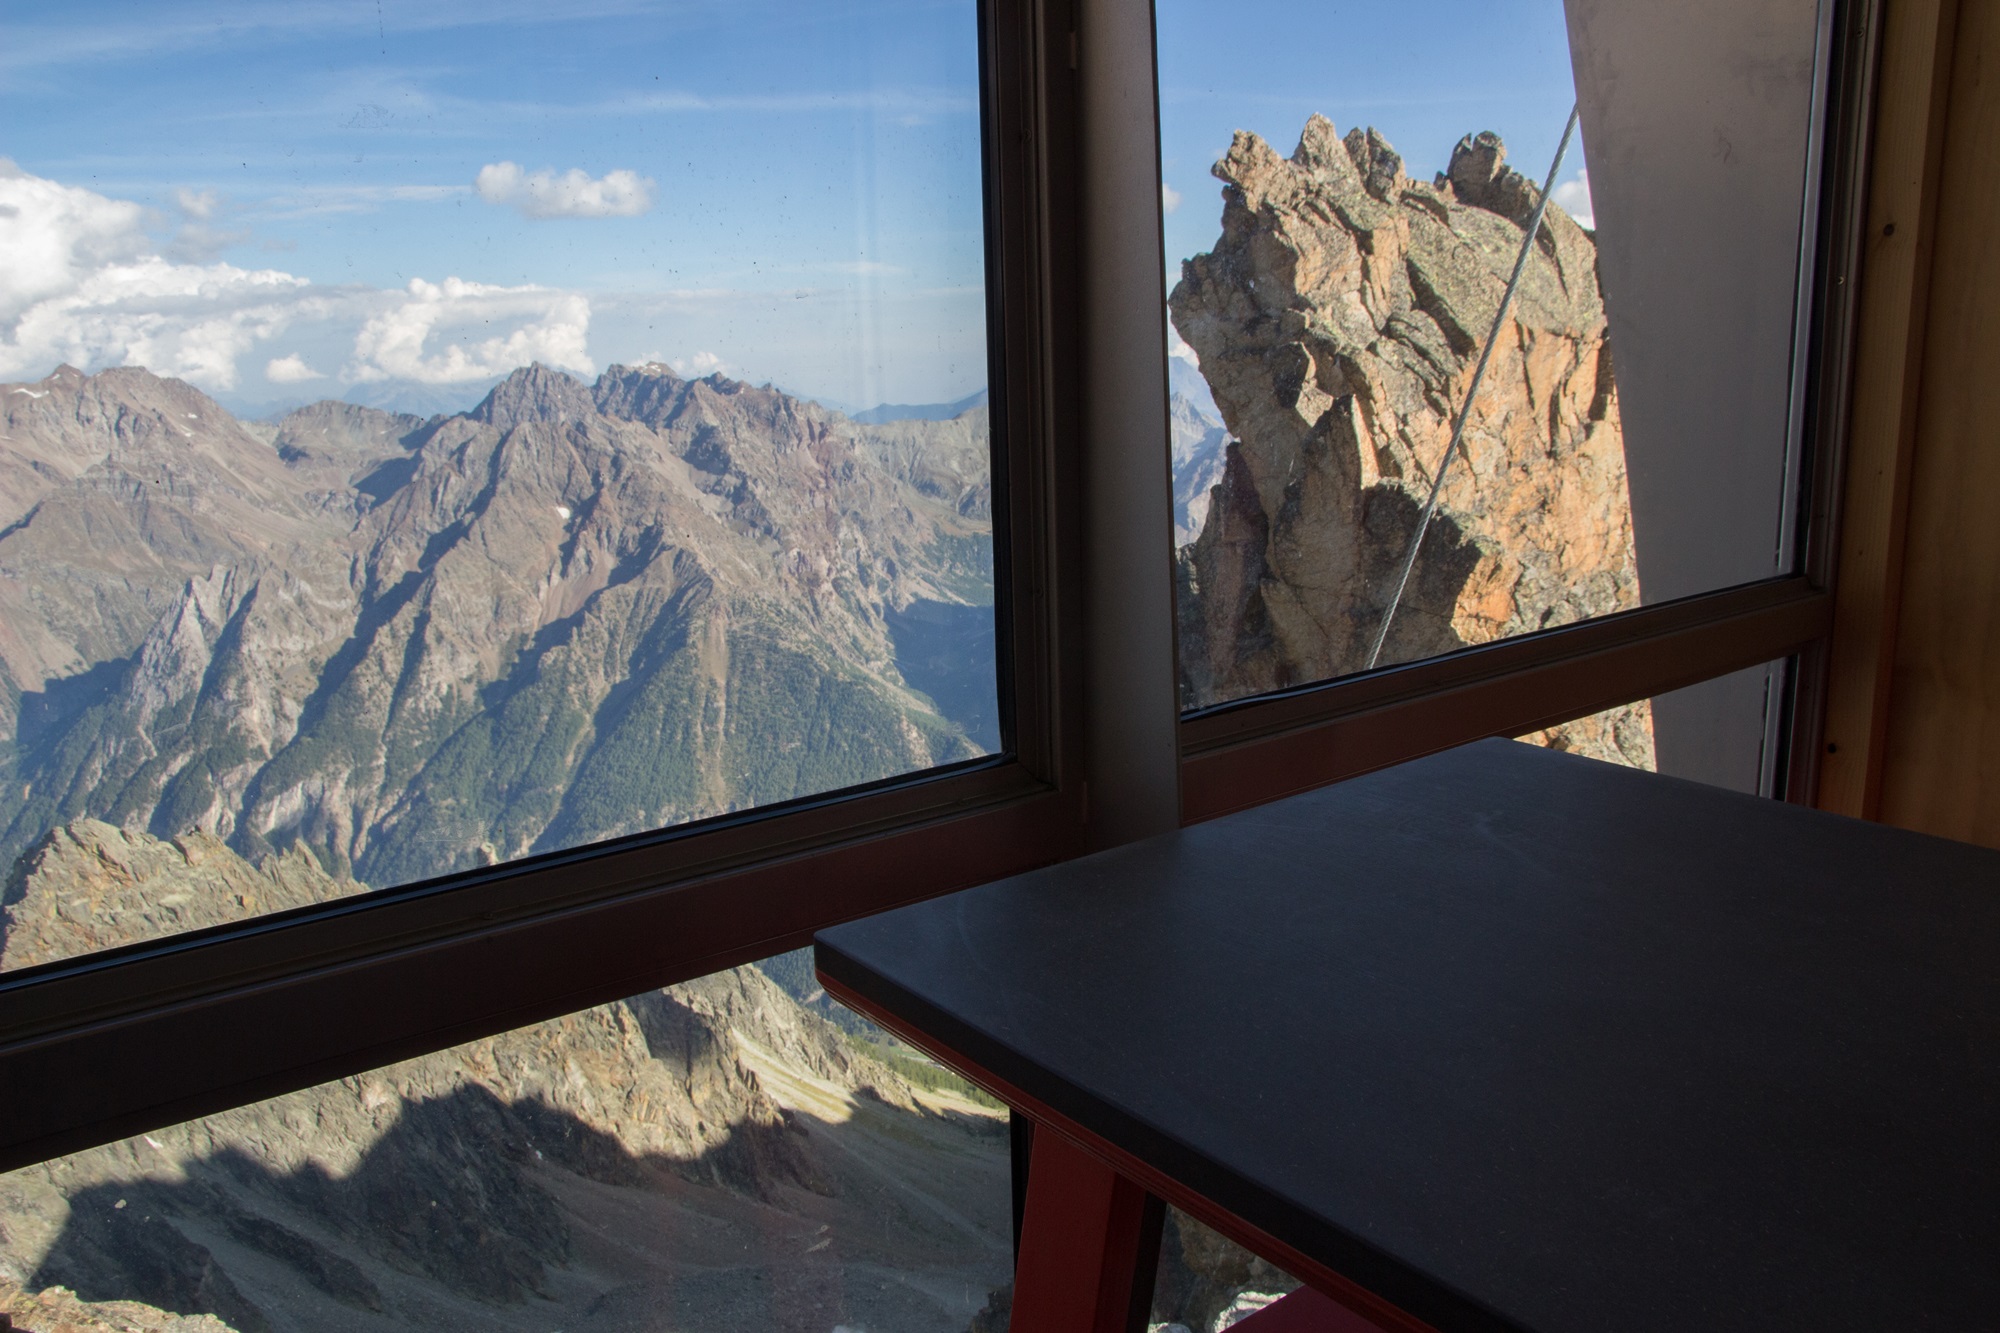 Spektakularne schronisko we włoskich Alpach